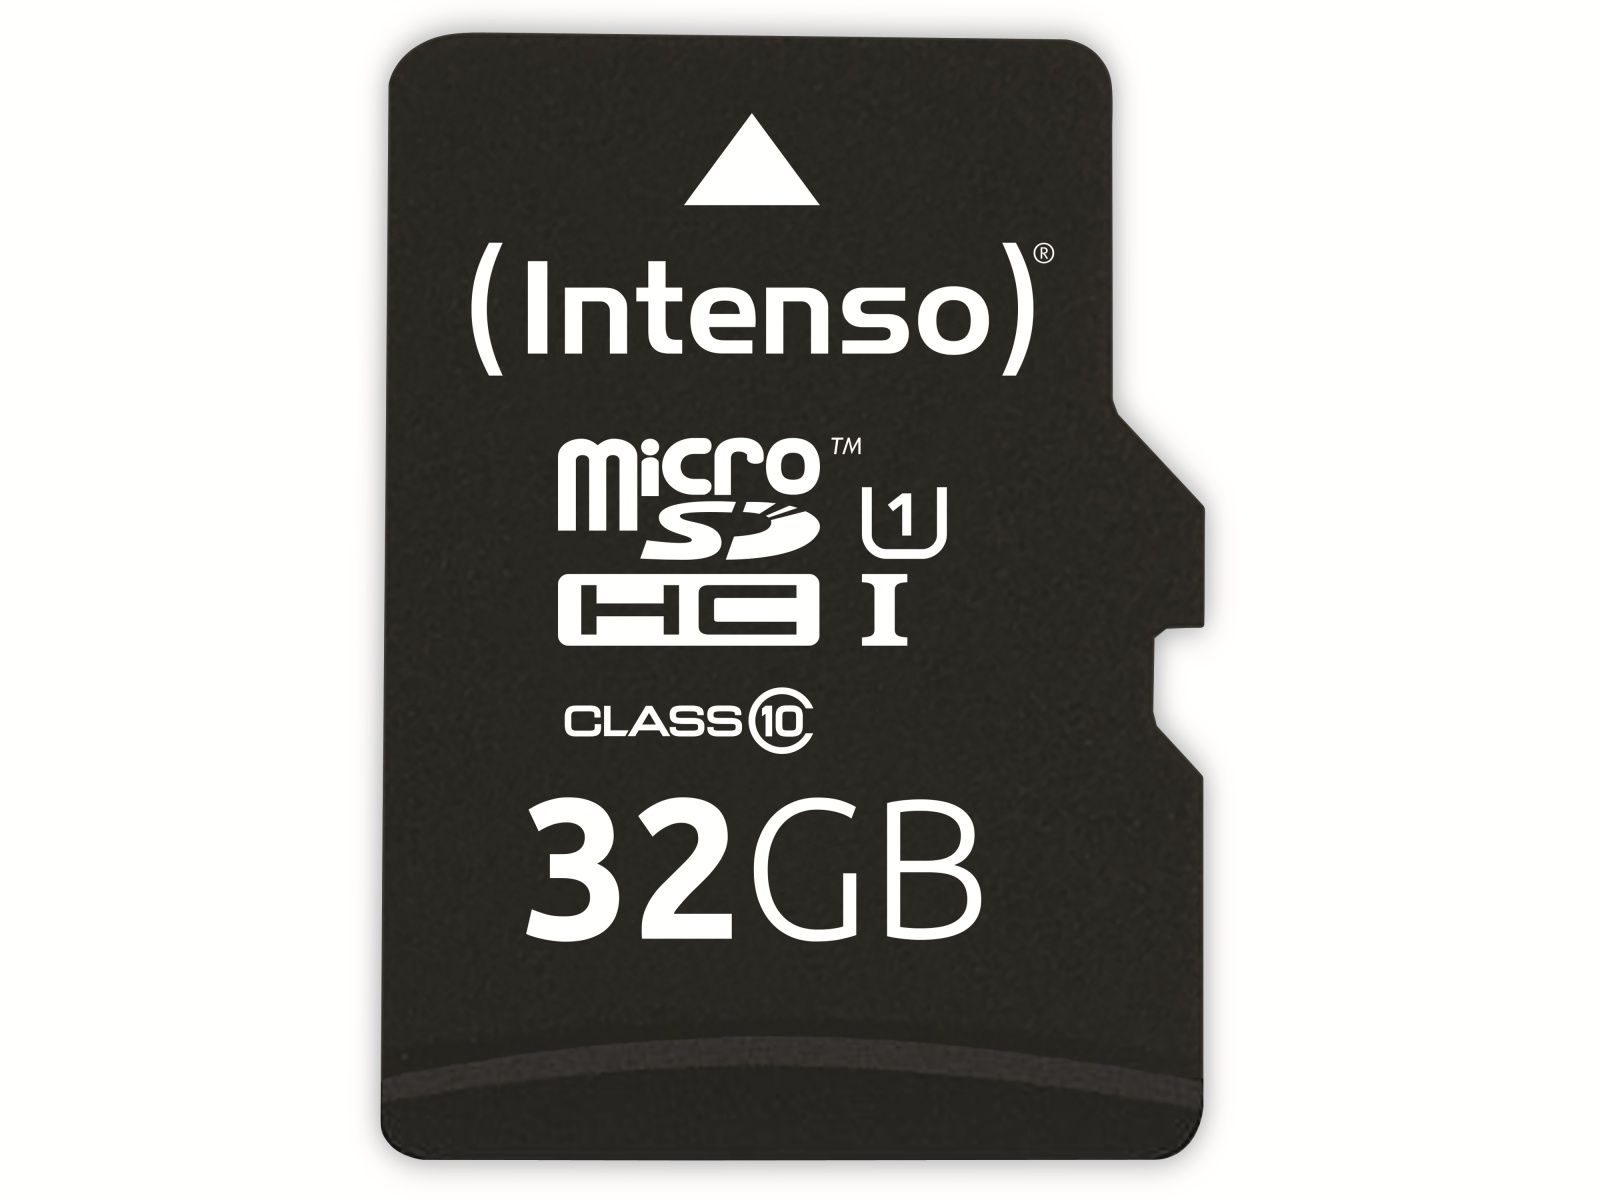 INTENSO microSDHC Card 3433480, 32 GB von Intenso